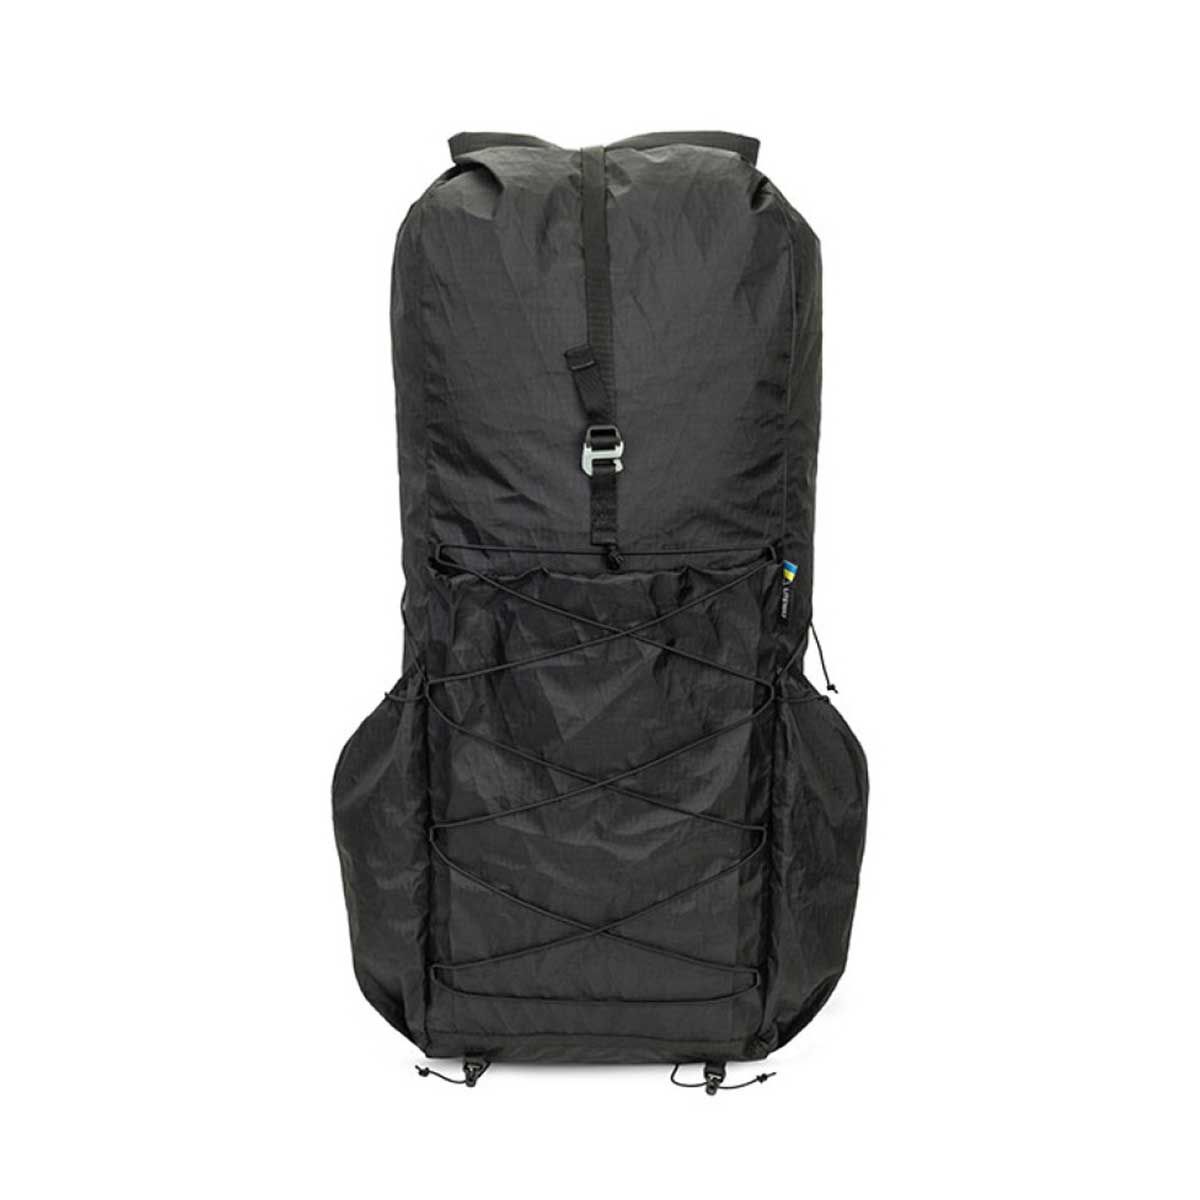 Liteway Biggie hiking backpack - 45L